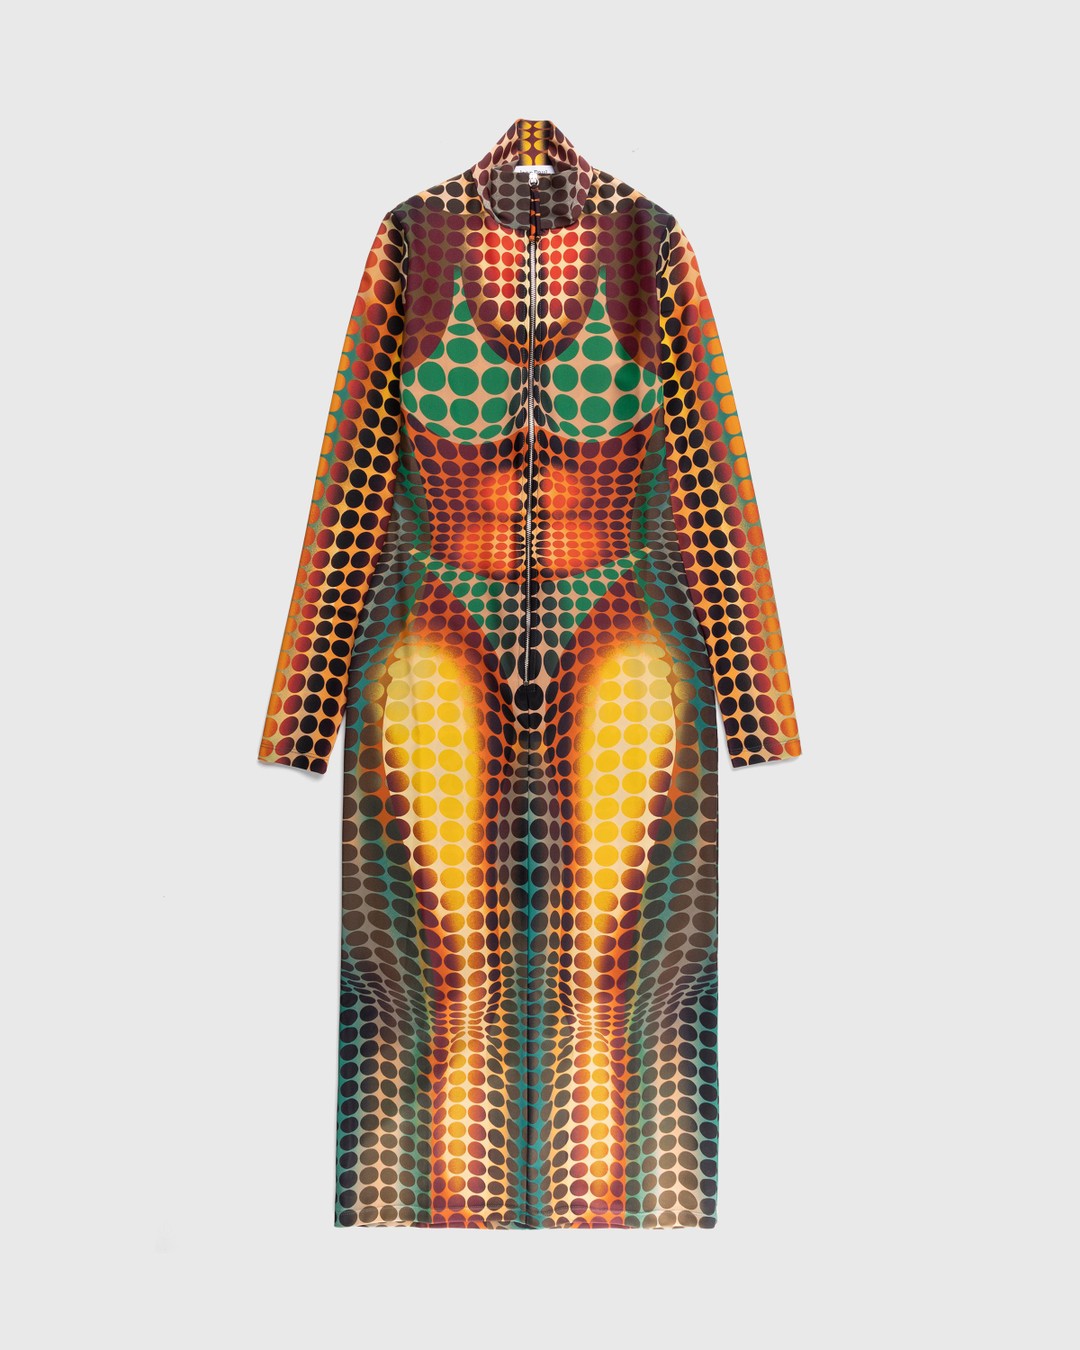 Eye On Design: Orange Shirred Velvet Corset Dress By John Paul Gaultier